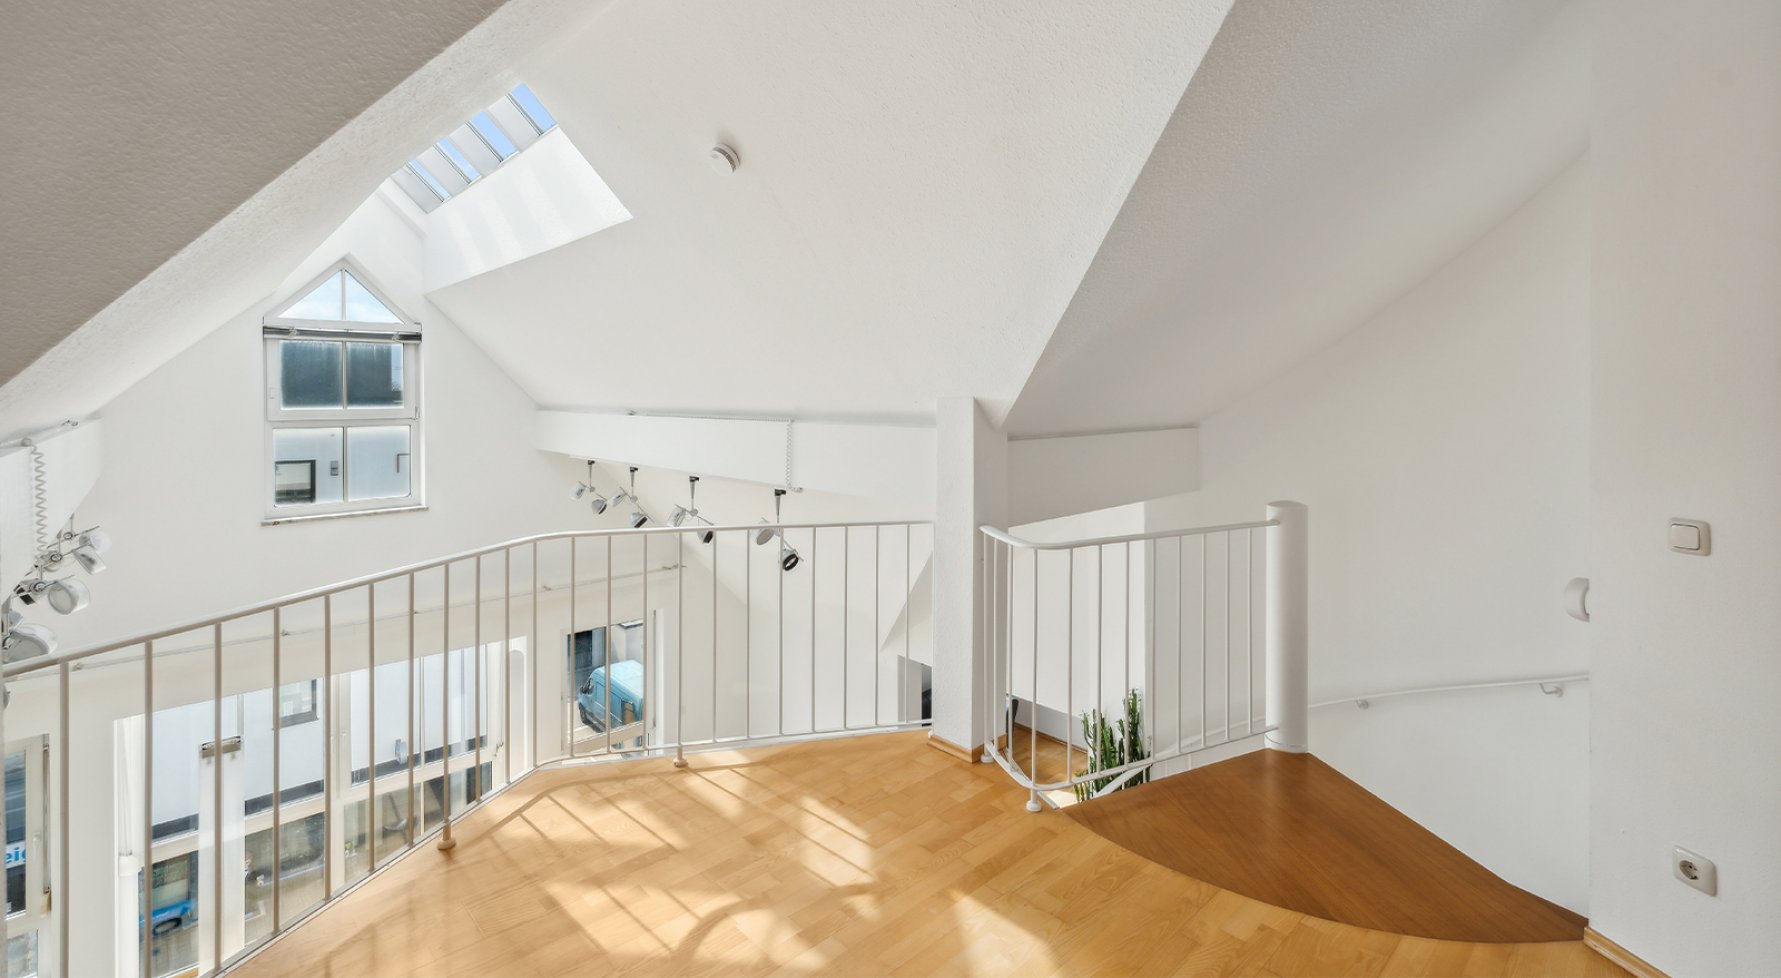 Immobilie in 83395 Bayern - Freilassing: Loft-Feeling! Große Dachterrassenwohnung über zwei Ebenen - bild 1